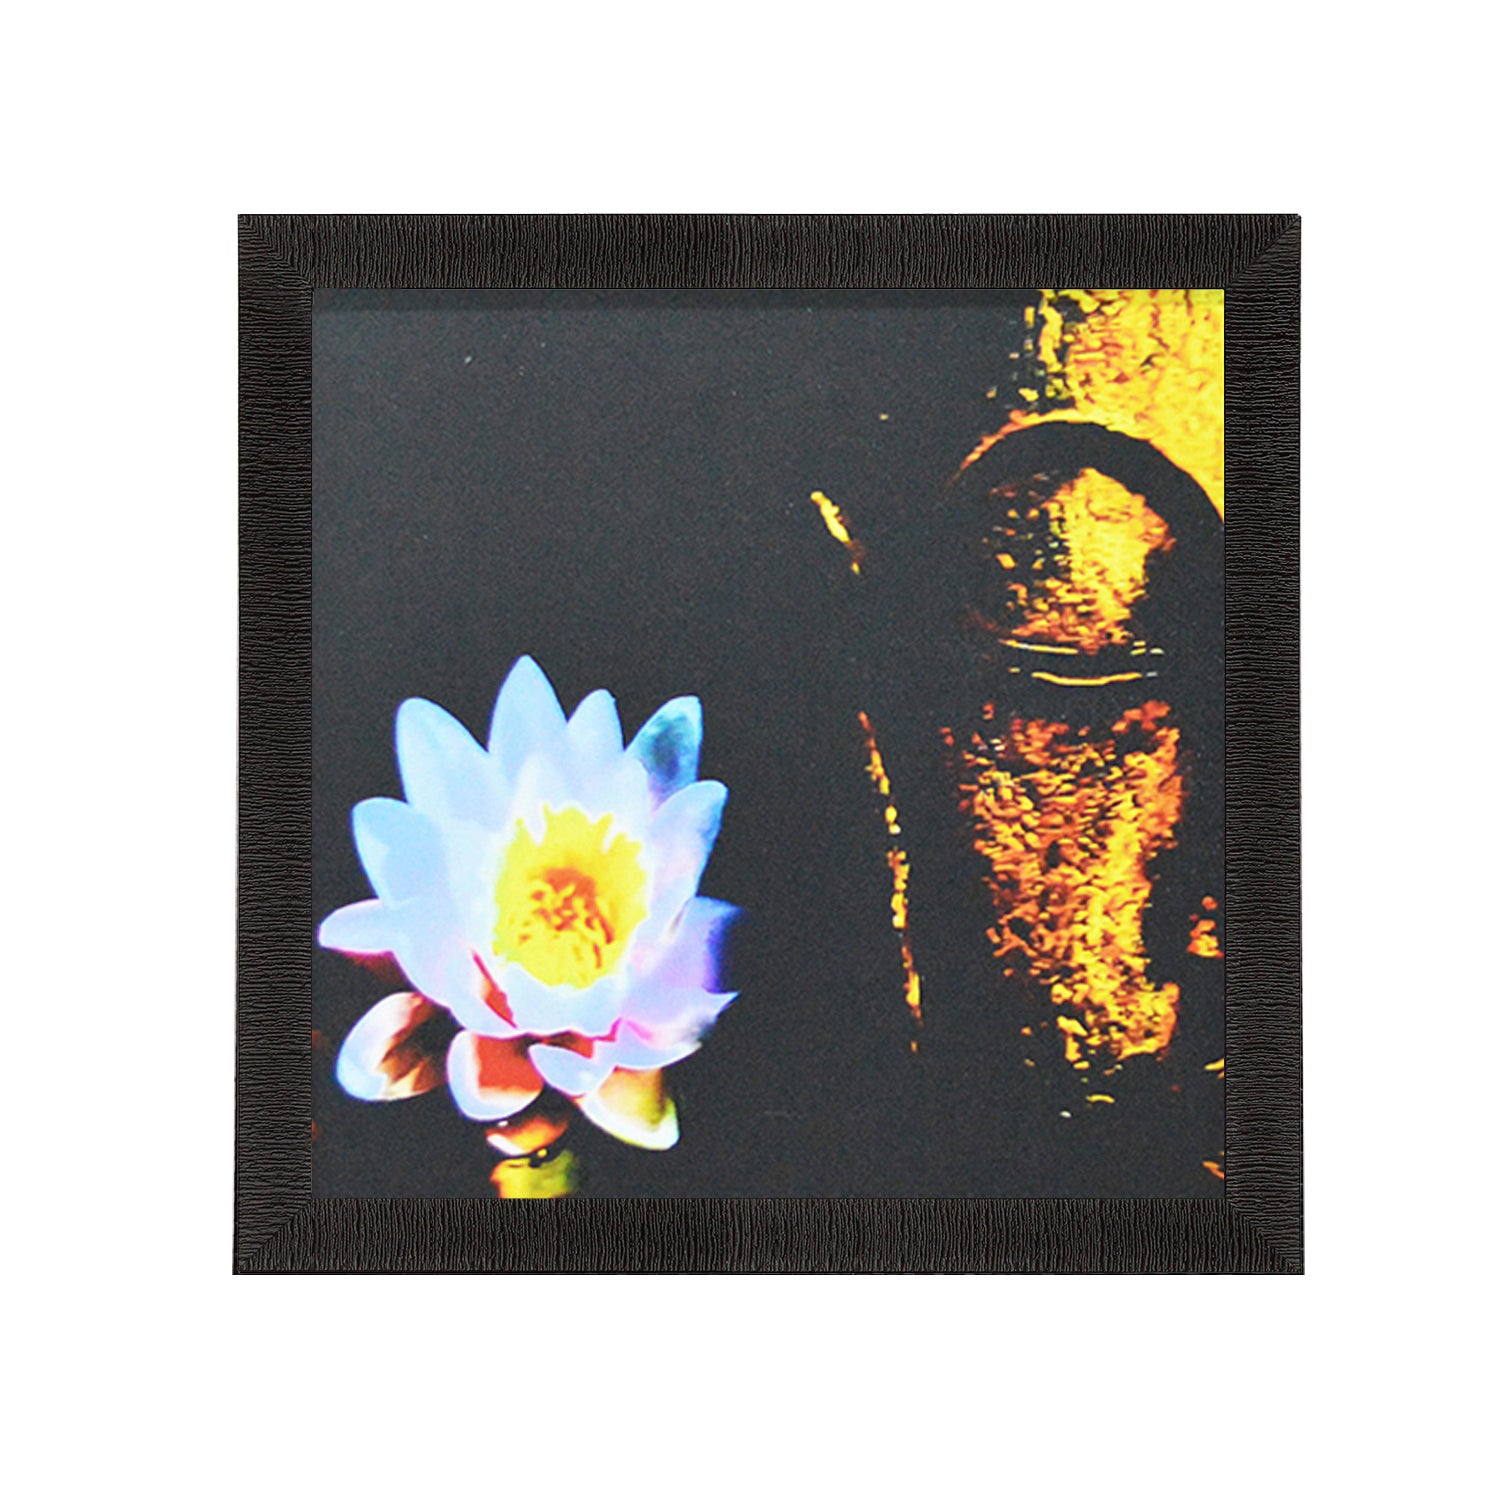 Laughing Buddha Design Satin Matt Texture UV Art Painting